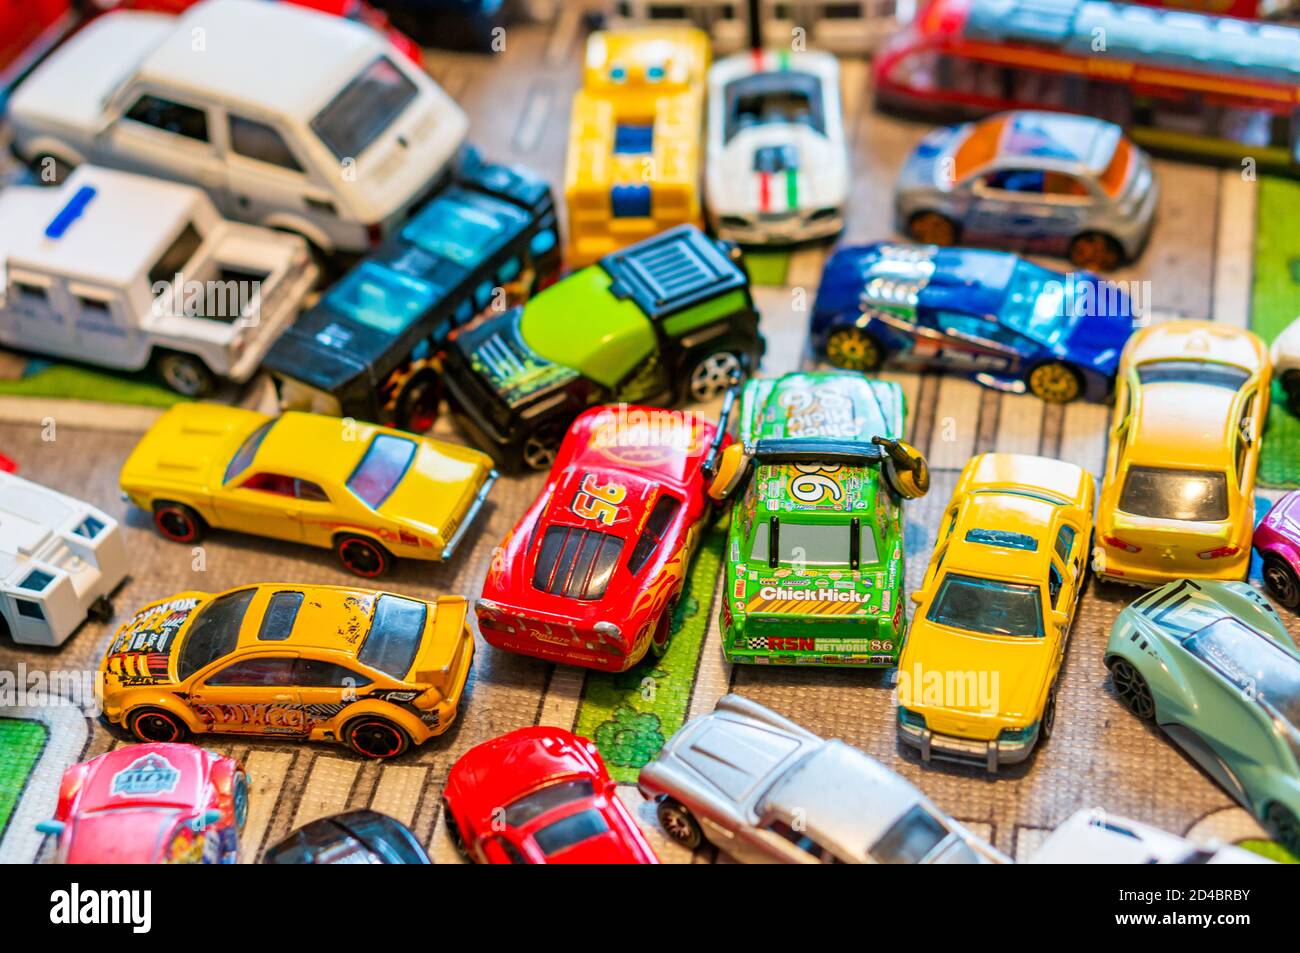 POZNAN, POLEN - 04. Oktober 2020: Mix aus bunten Marken-Modell Spielzeugautos auf einer Spielmatte im weichen Fokus Hintergrund. Stockfoto